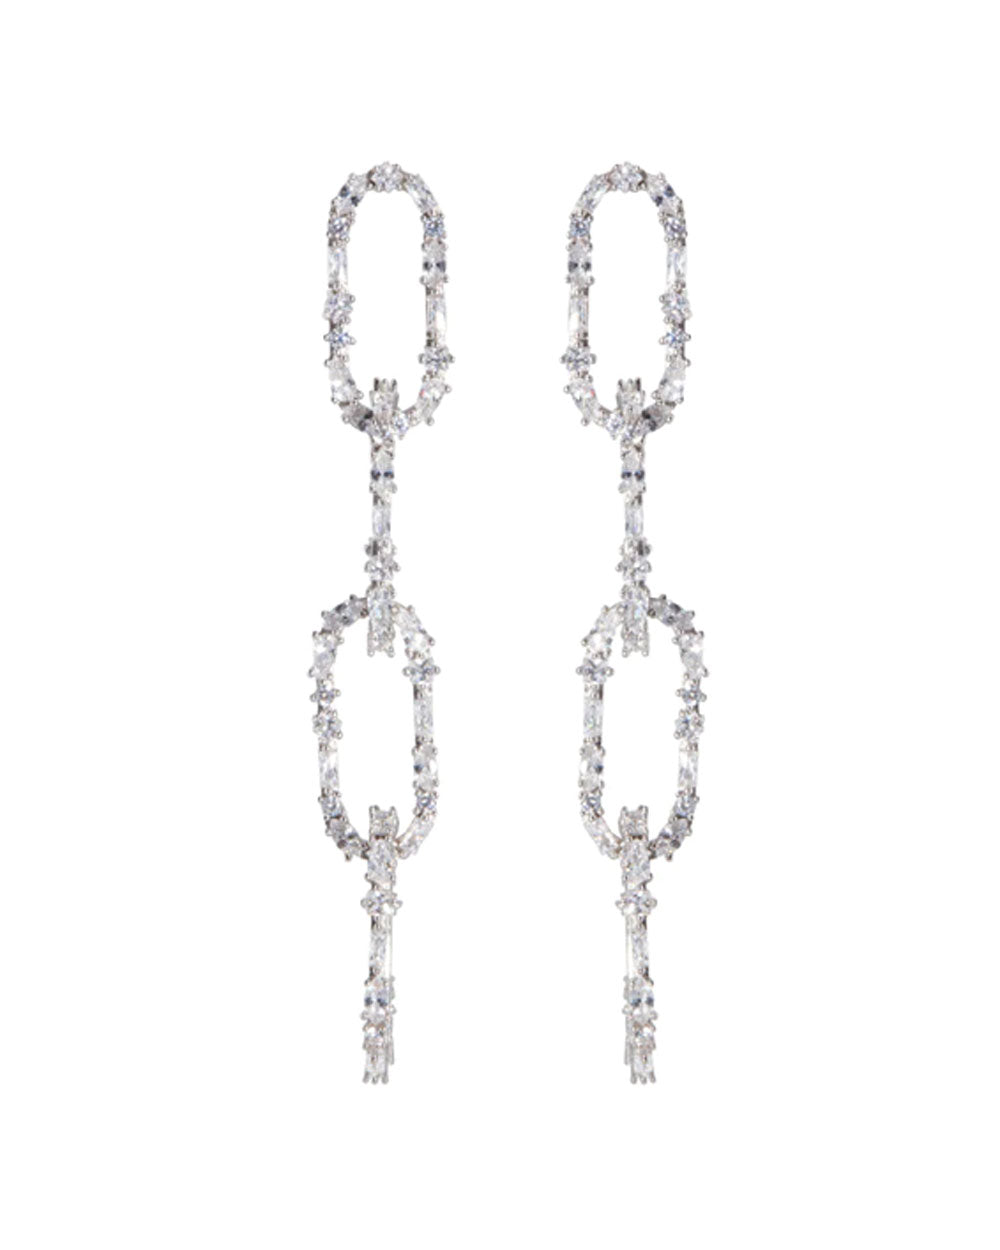 Rhodium King Crystal Link Earrings